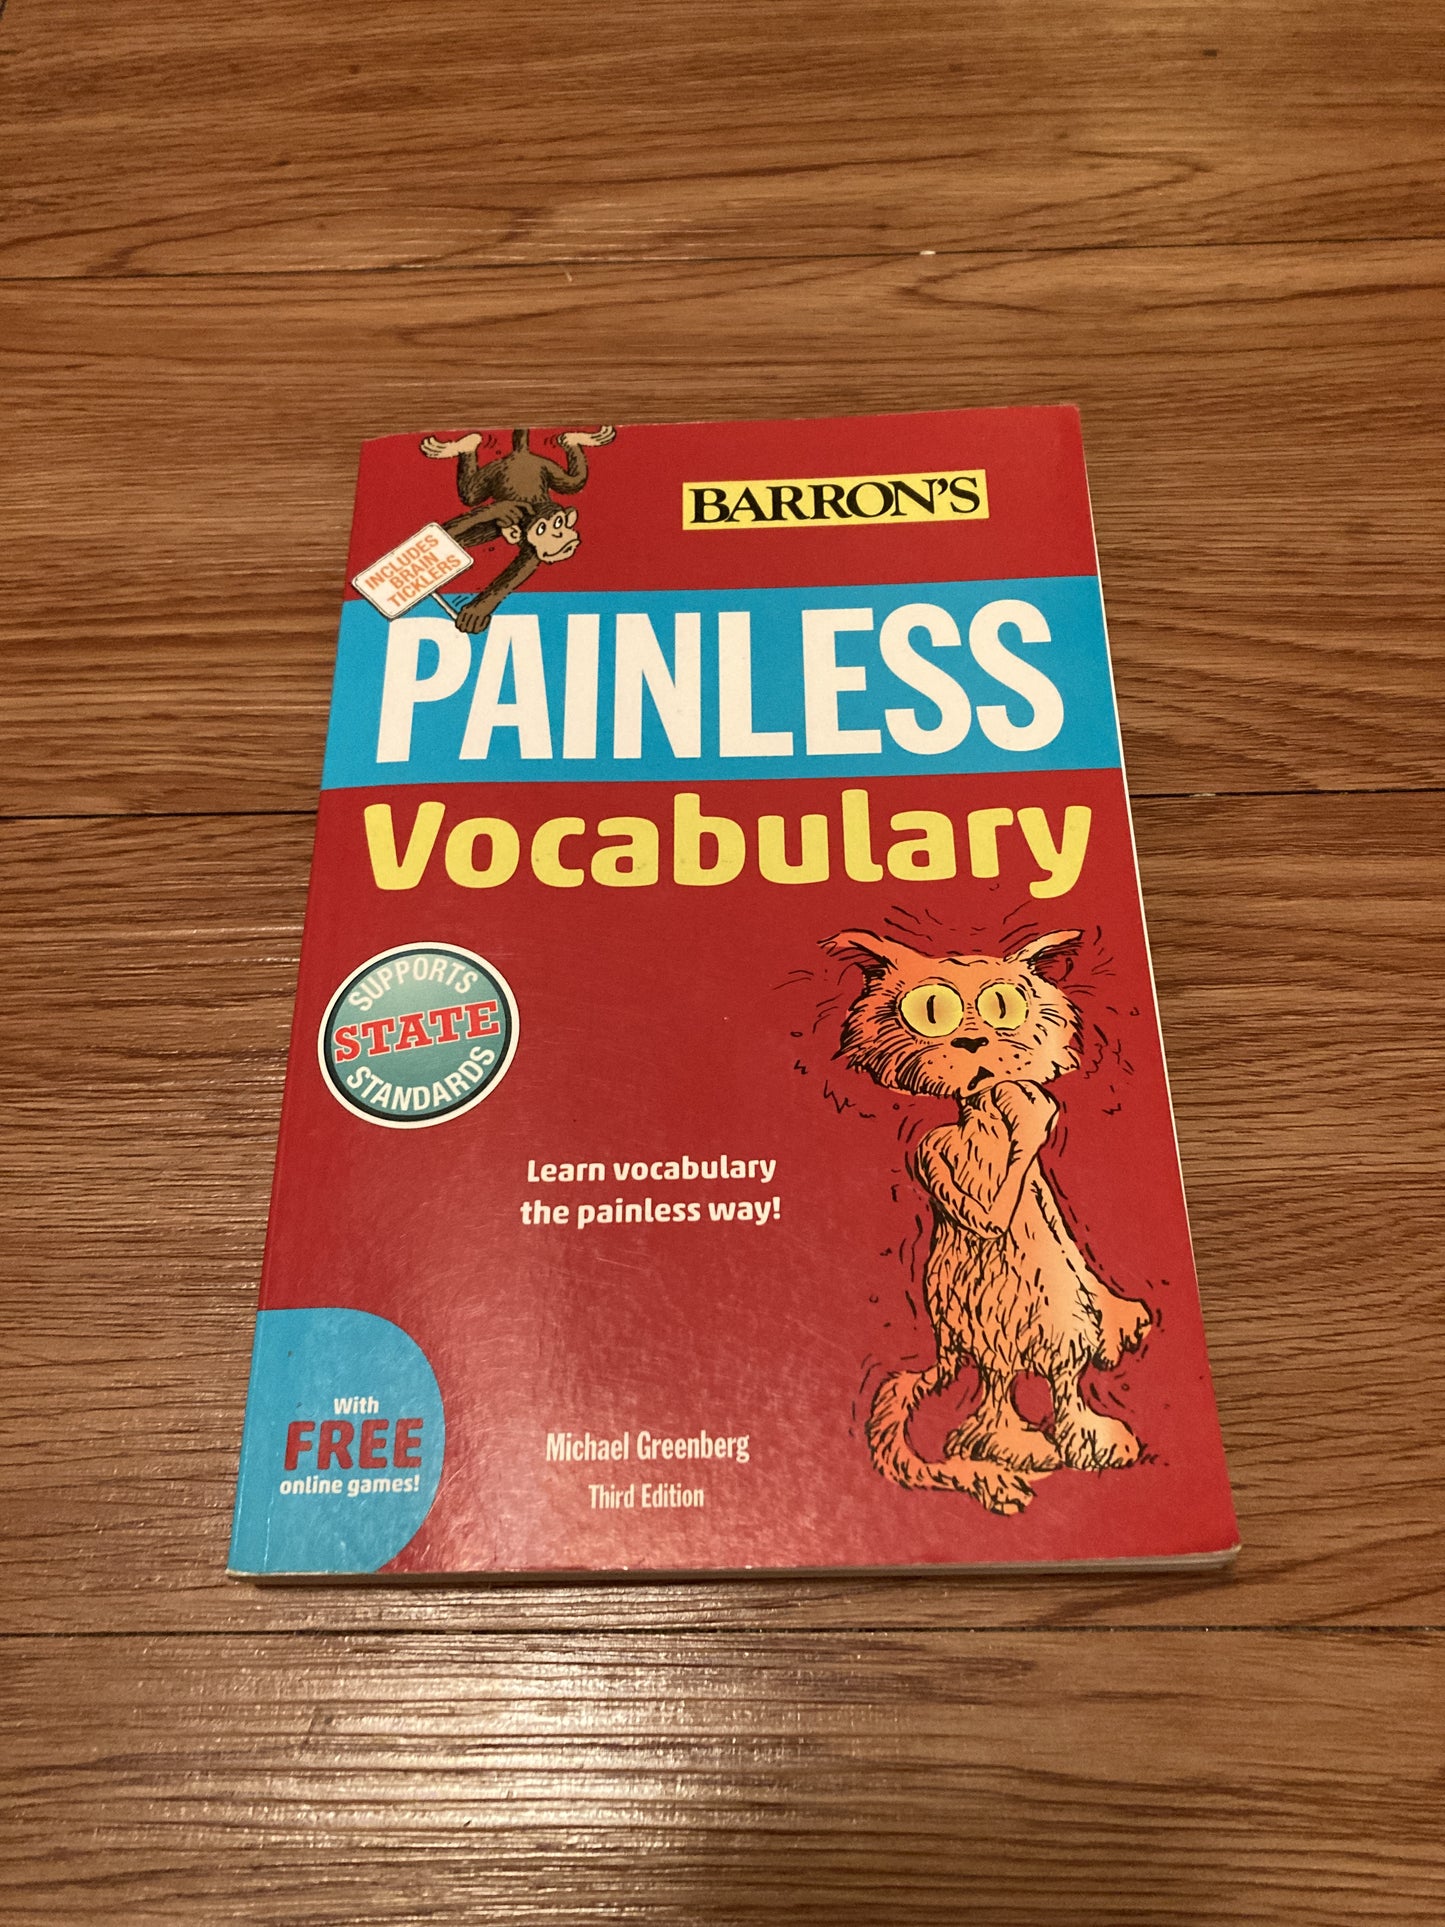 Painless Vocabulary (Painless Series)